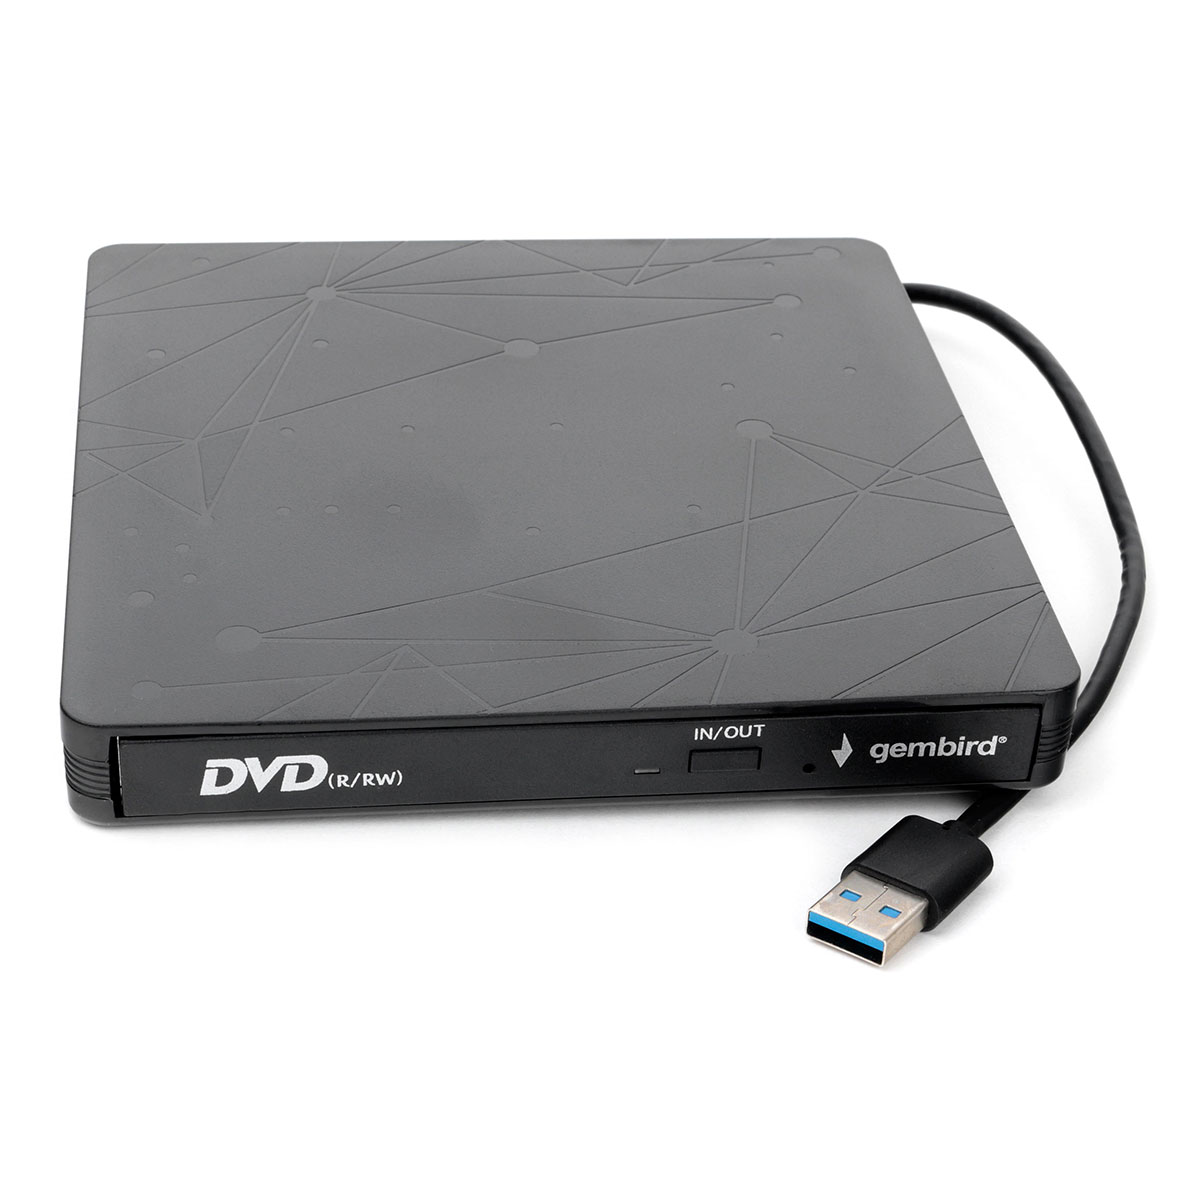  DVD+/-RW Gembird DVD-USB-03